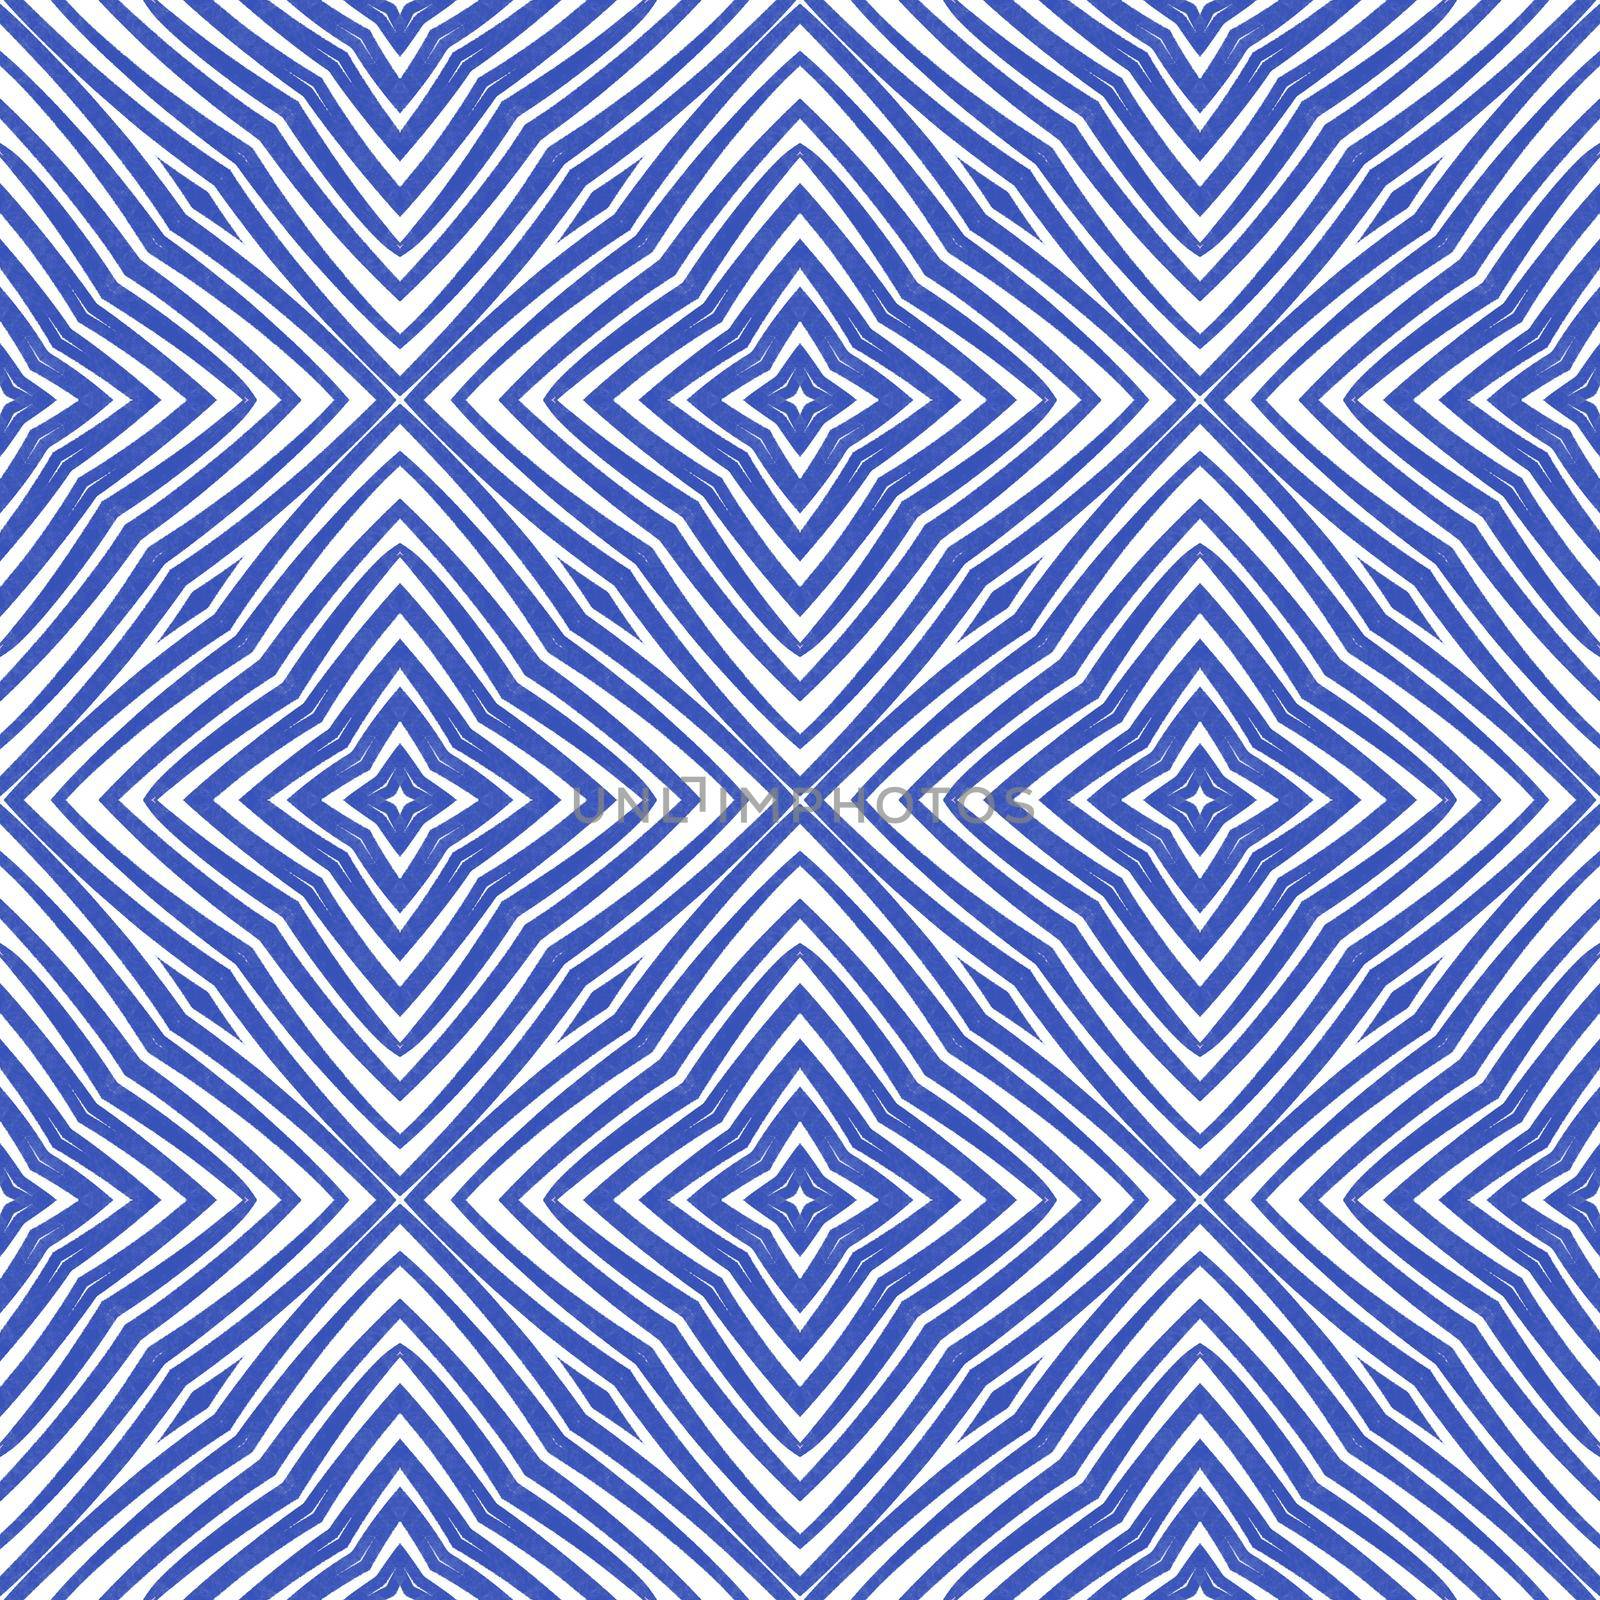 Striped hand drawn pattern. Indigo symmetrical by beginagain